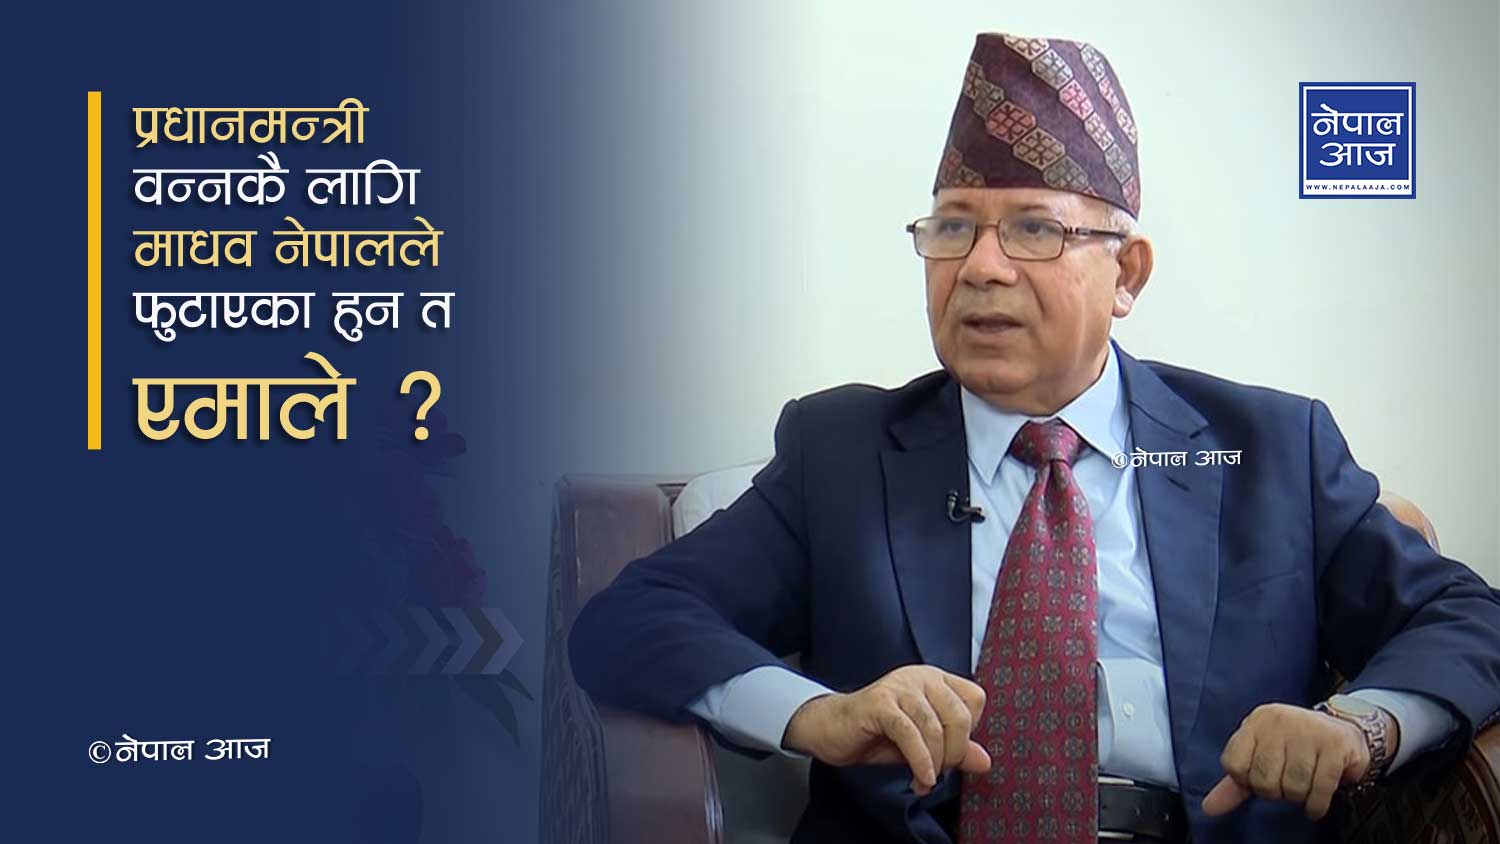 माधव नेपाल १० महिनापछि यसरी वन्दैछन् प्रधानमन्त्री